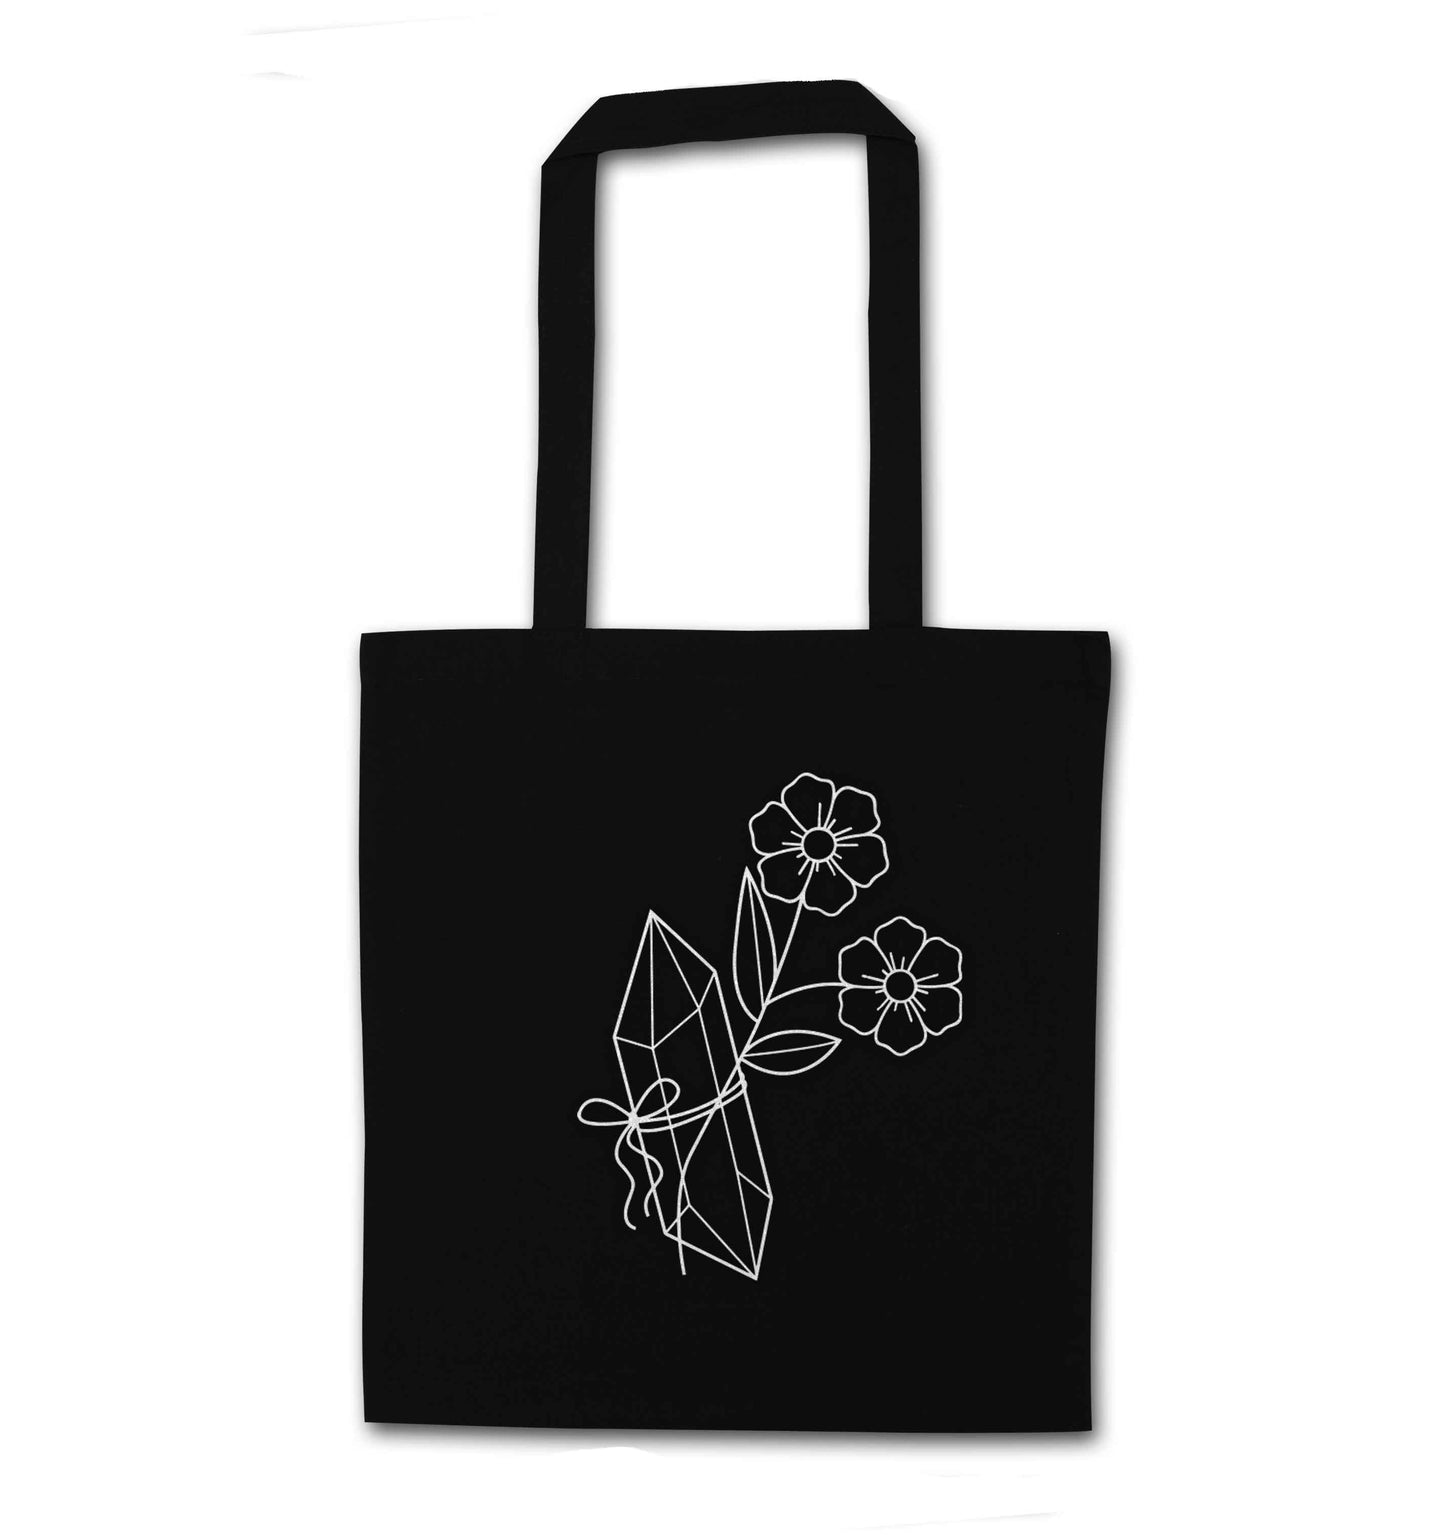 Crystal flower illustration black tote bag